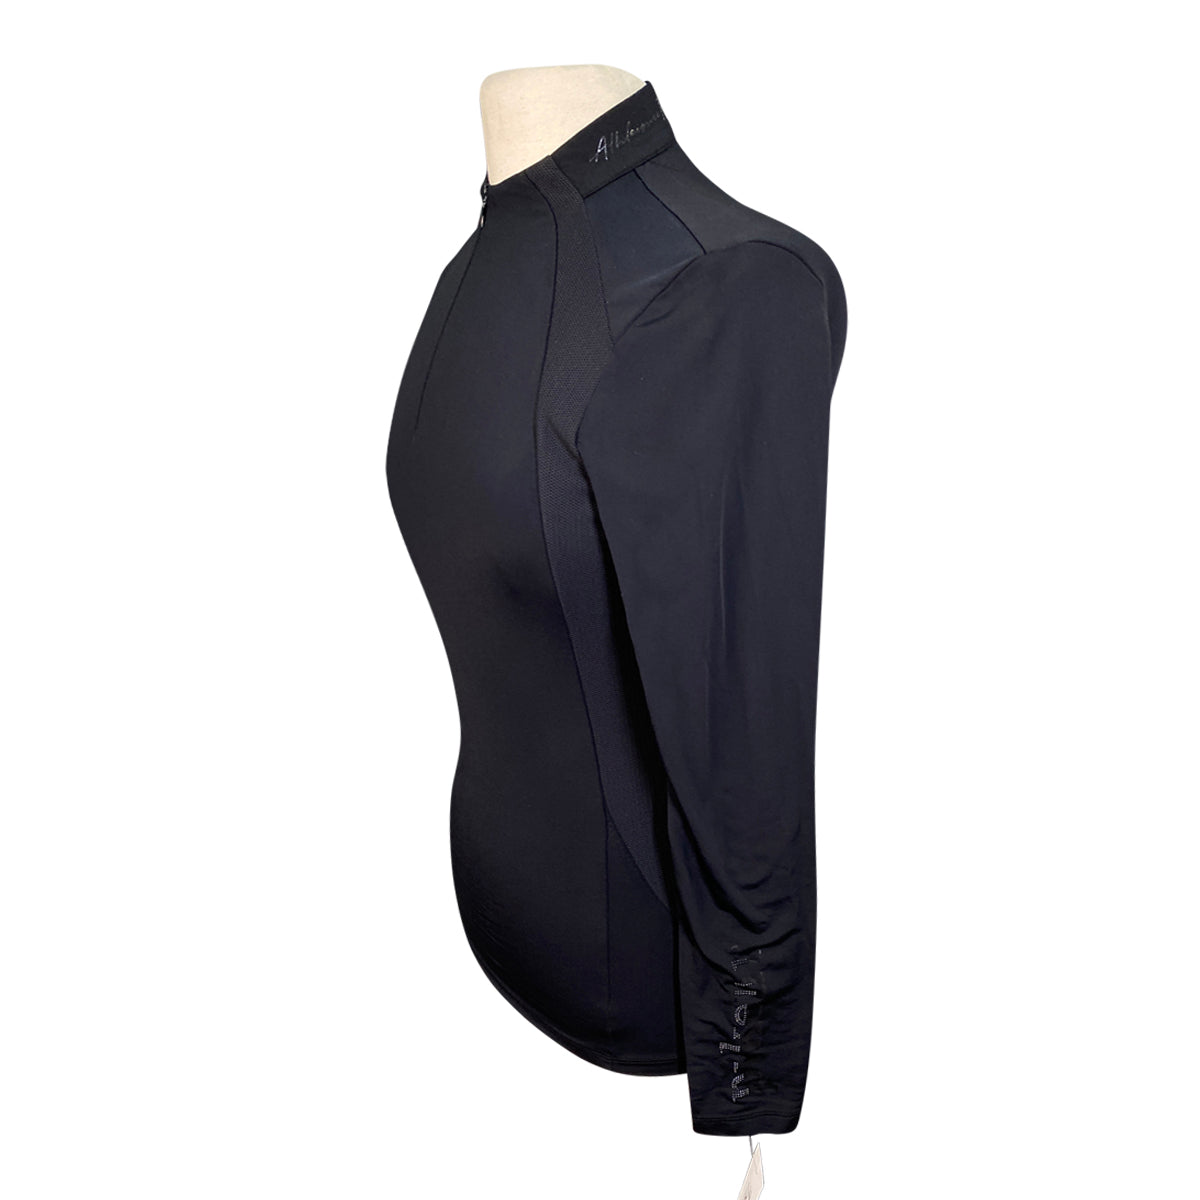 Pikeur Ladies' 1/4 Zip Long Sleeve Riding Top in Black